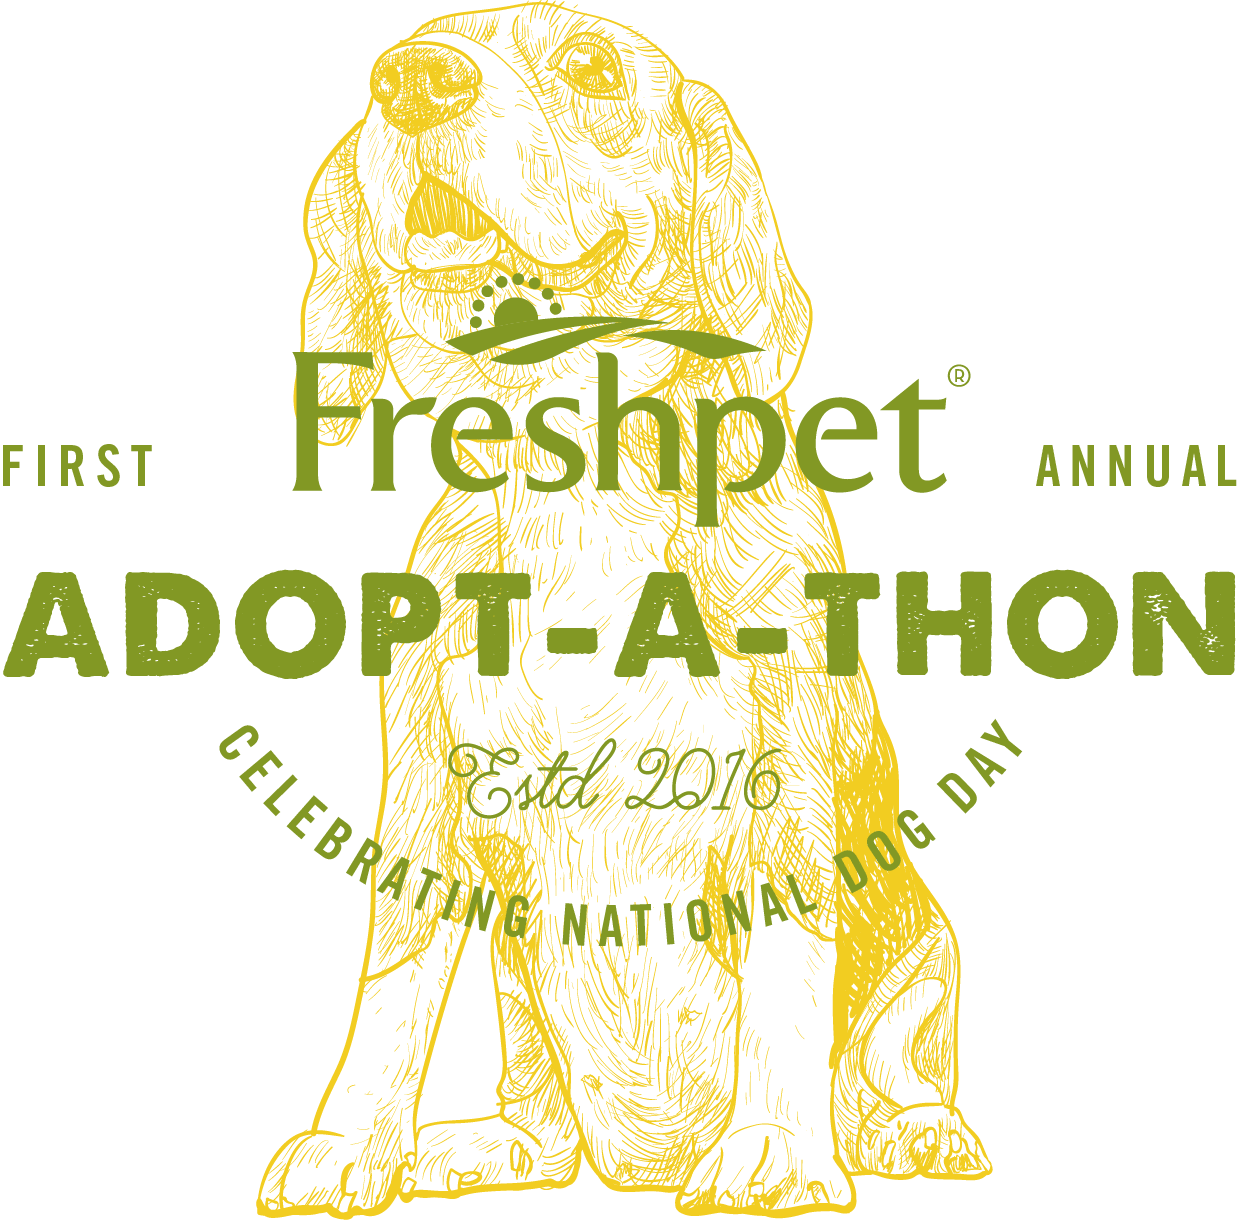 Celebra la Giornata Nazionale del Cane con il primo ADOPT-A-THON annuale